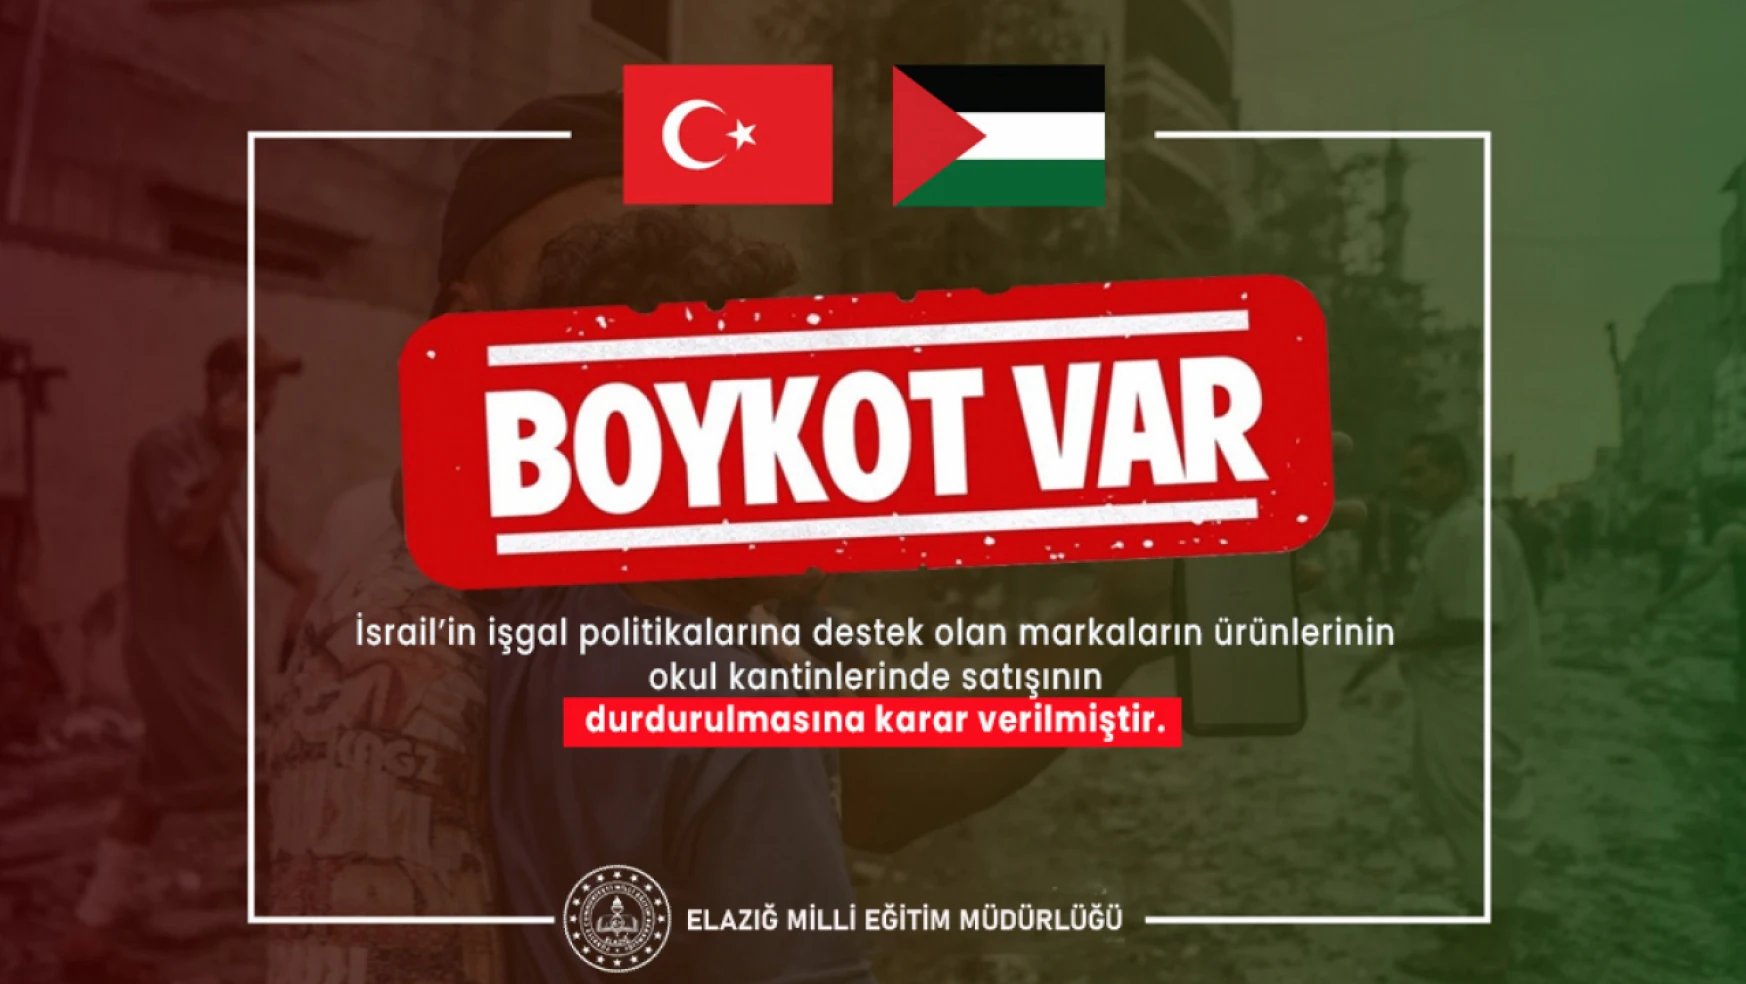 Elazığ'daki kantinlerde İsrail'i destekleyen markalara boykot